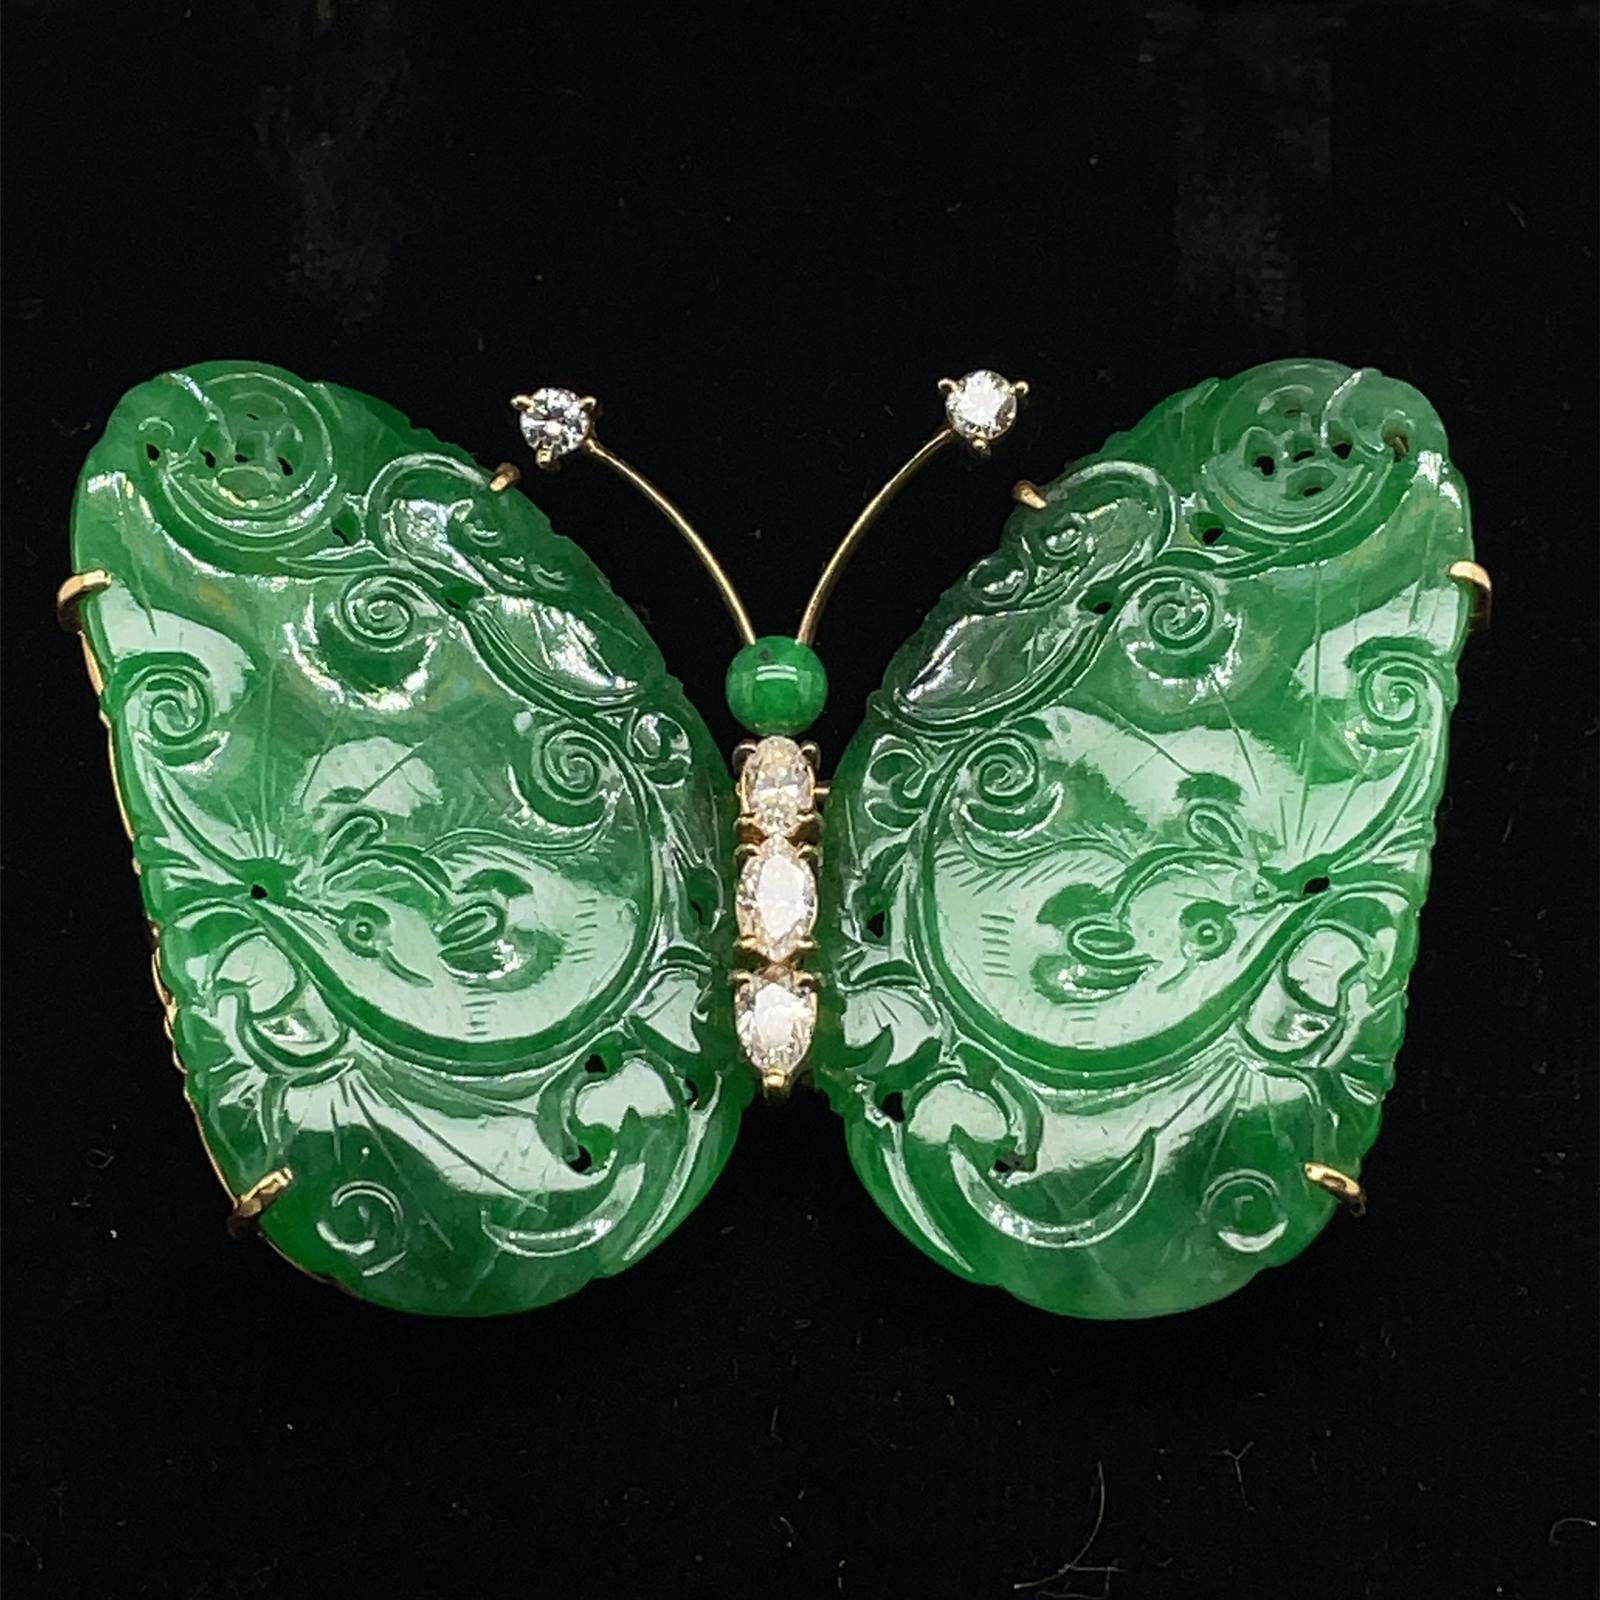 Retro-Schmetterlingsbrosche aus unbehandelter Jade und Diamanten, um 1960.

Diese lustige und farbenfrohe Brosche zeigt zwei kunstvoll geschnitzte Flügel aus natürlichem, unbehandeltem grünem Jadeit, die auf beiden Seiten des diamantenen